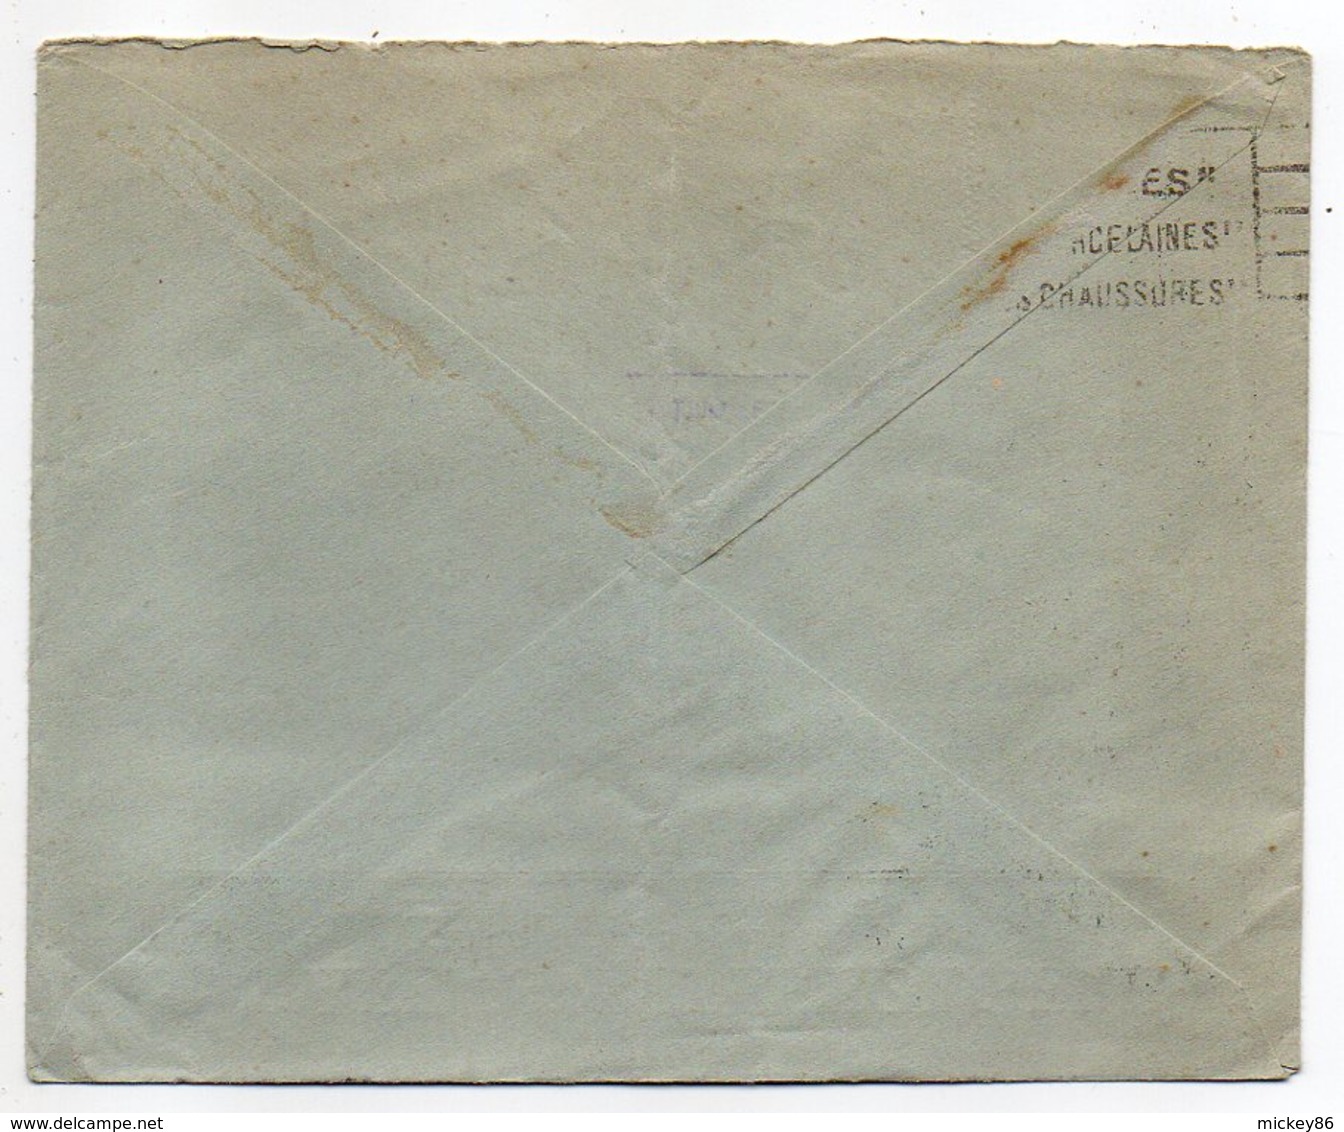 Norvège -1934 - Lettre De OSLO Pour LIMOGES(France)-timbres-cachet--a/s RAFENS EFTERFOLGERE - Lettres & Documents